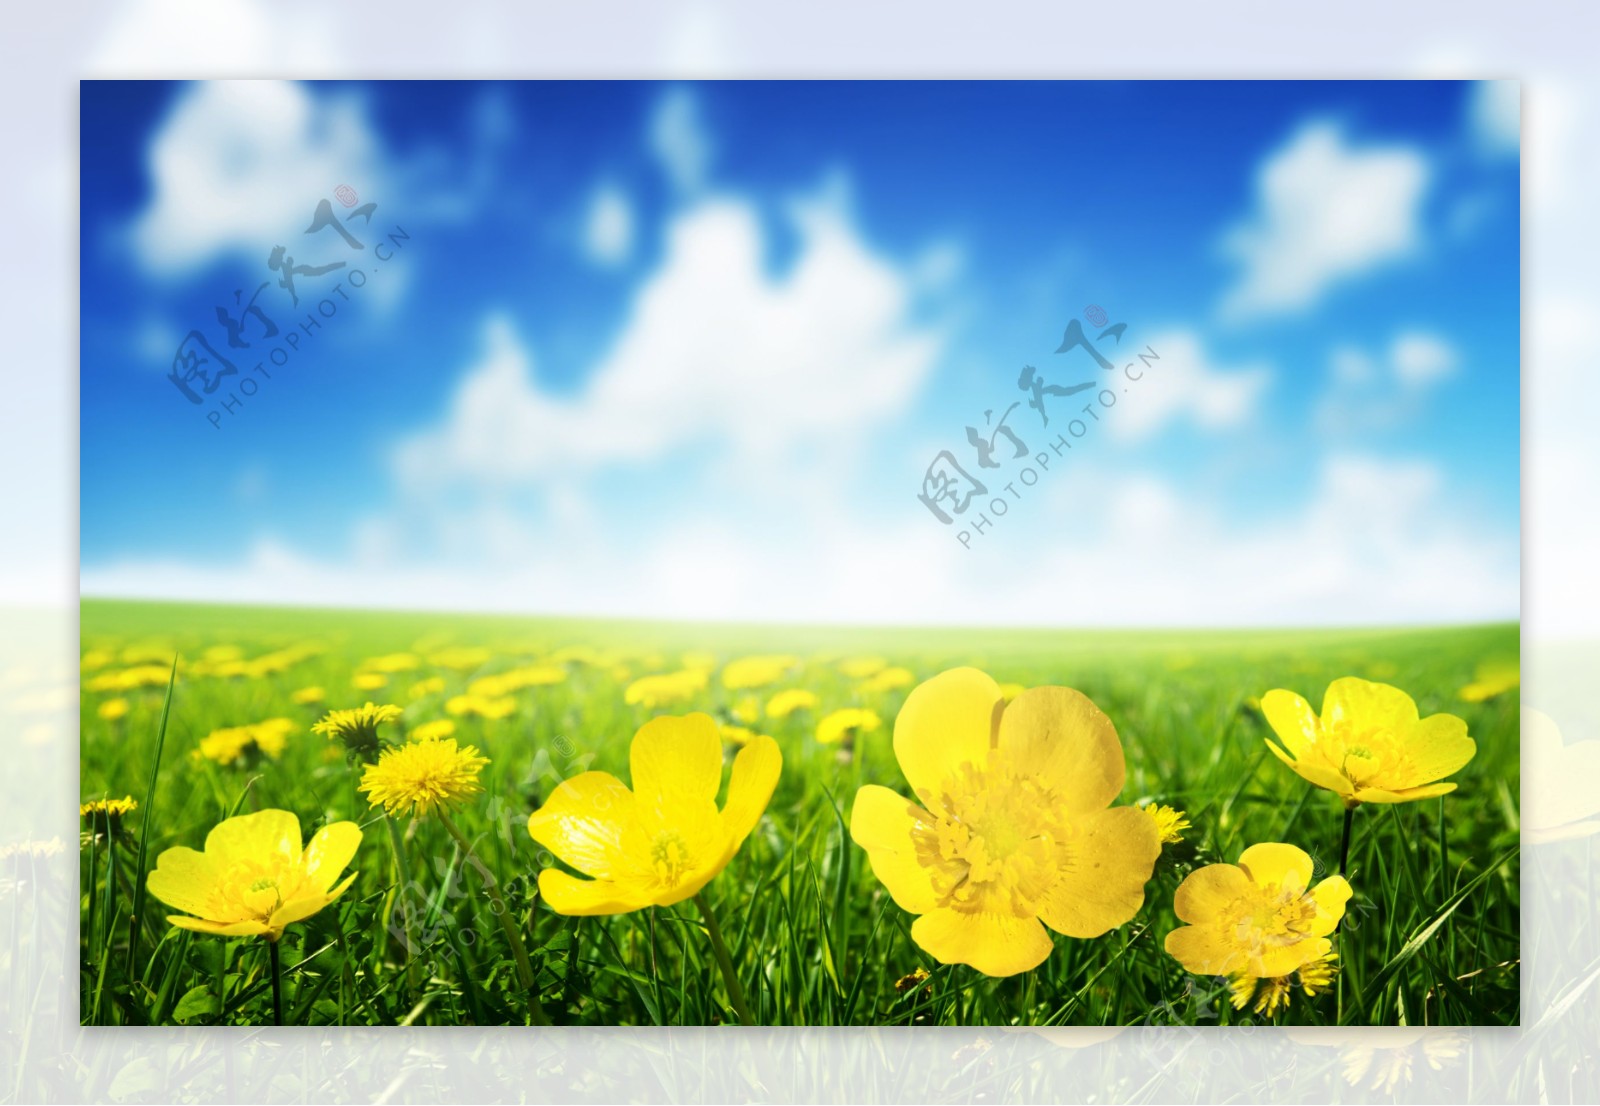 蓝天白云与鲜花草地背景图片